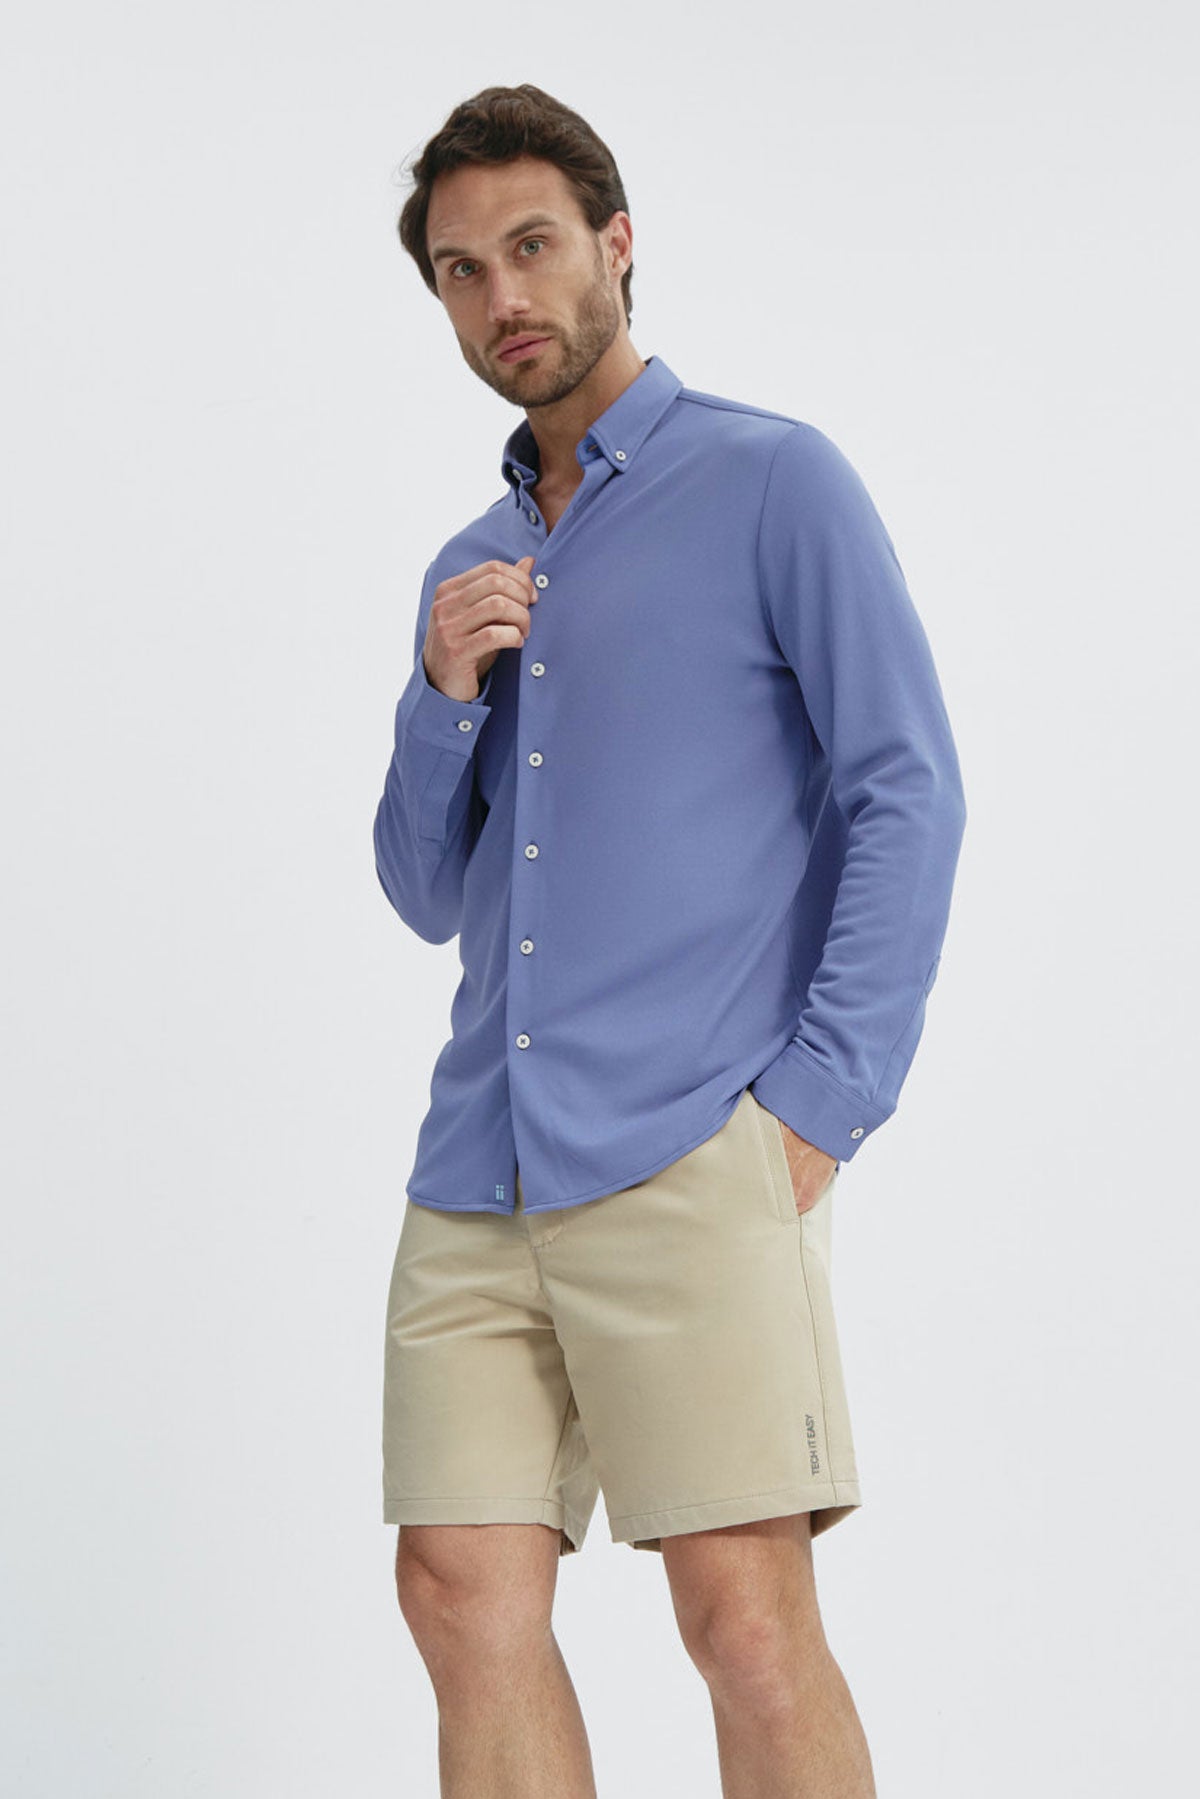 Men's regular fit lavender casual shirt